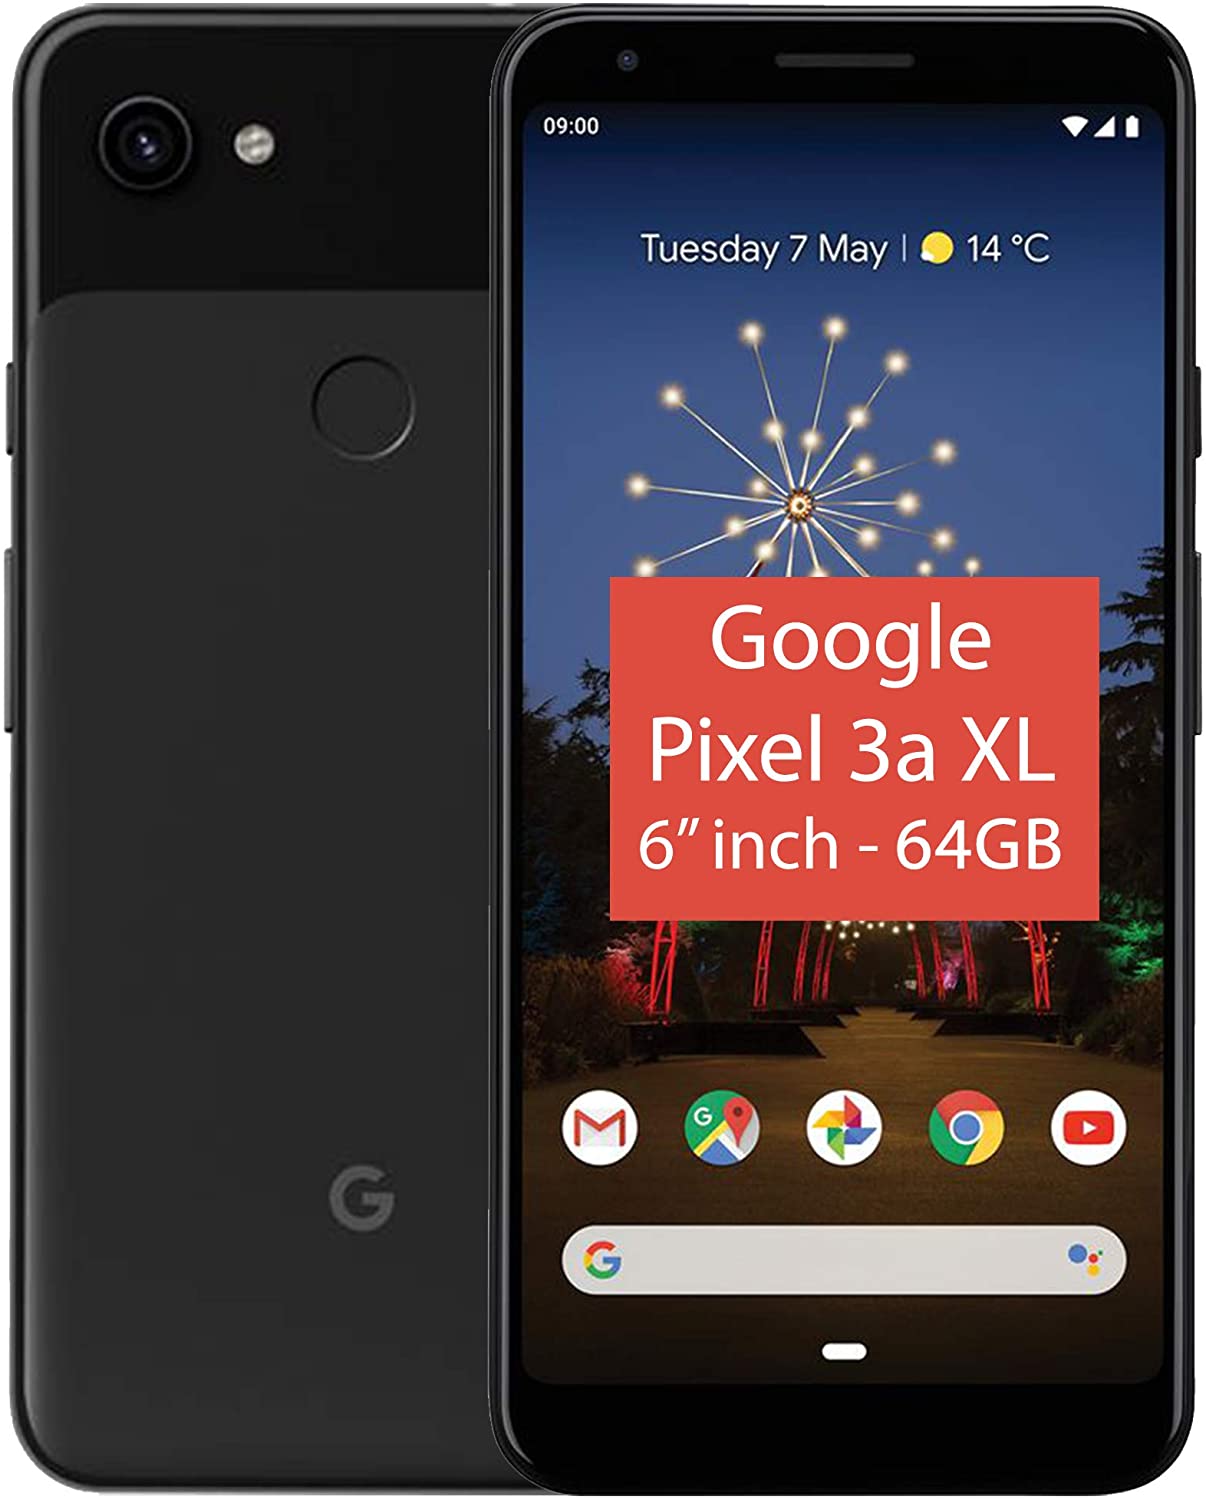 Google Pixel 3a 64GB simフリー Just Black